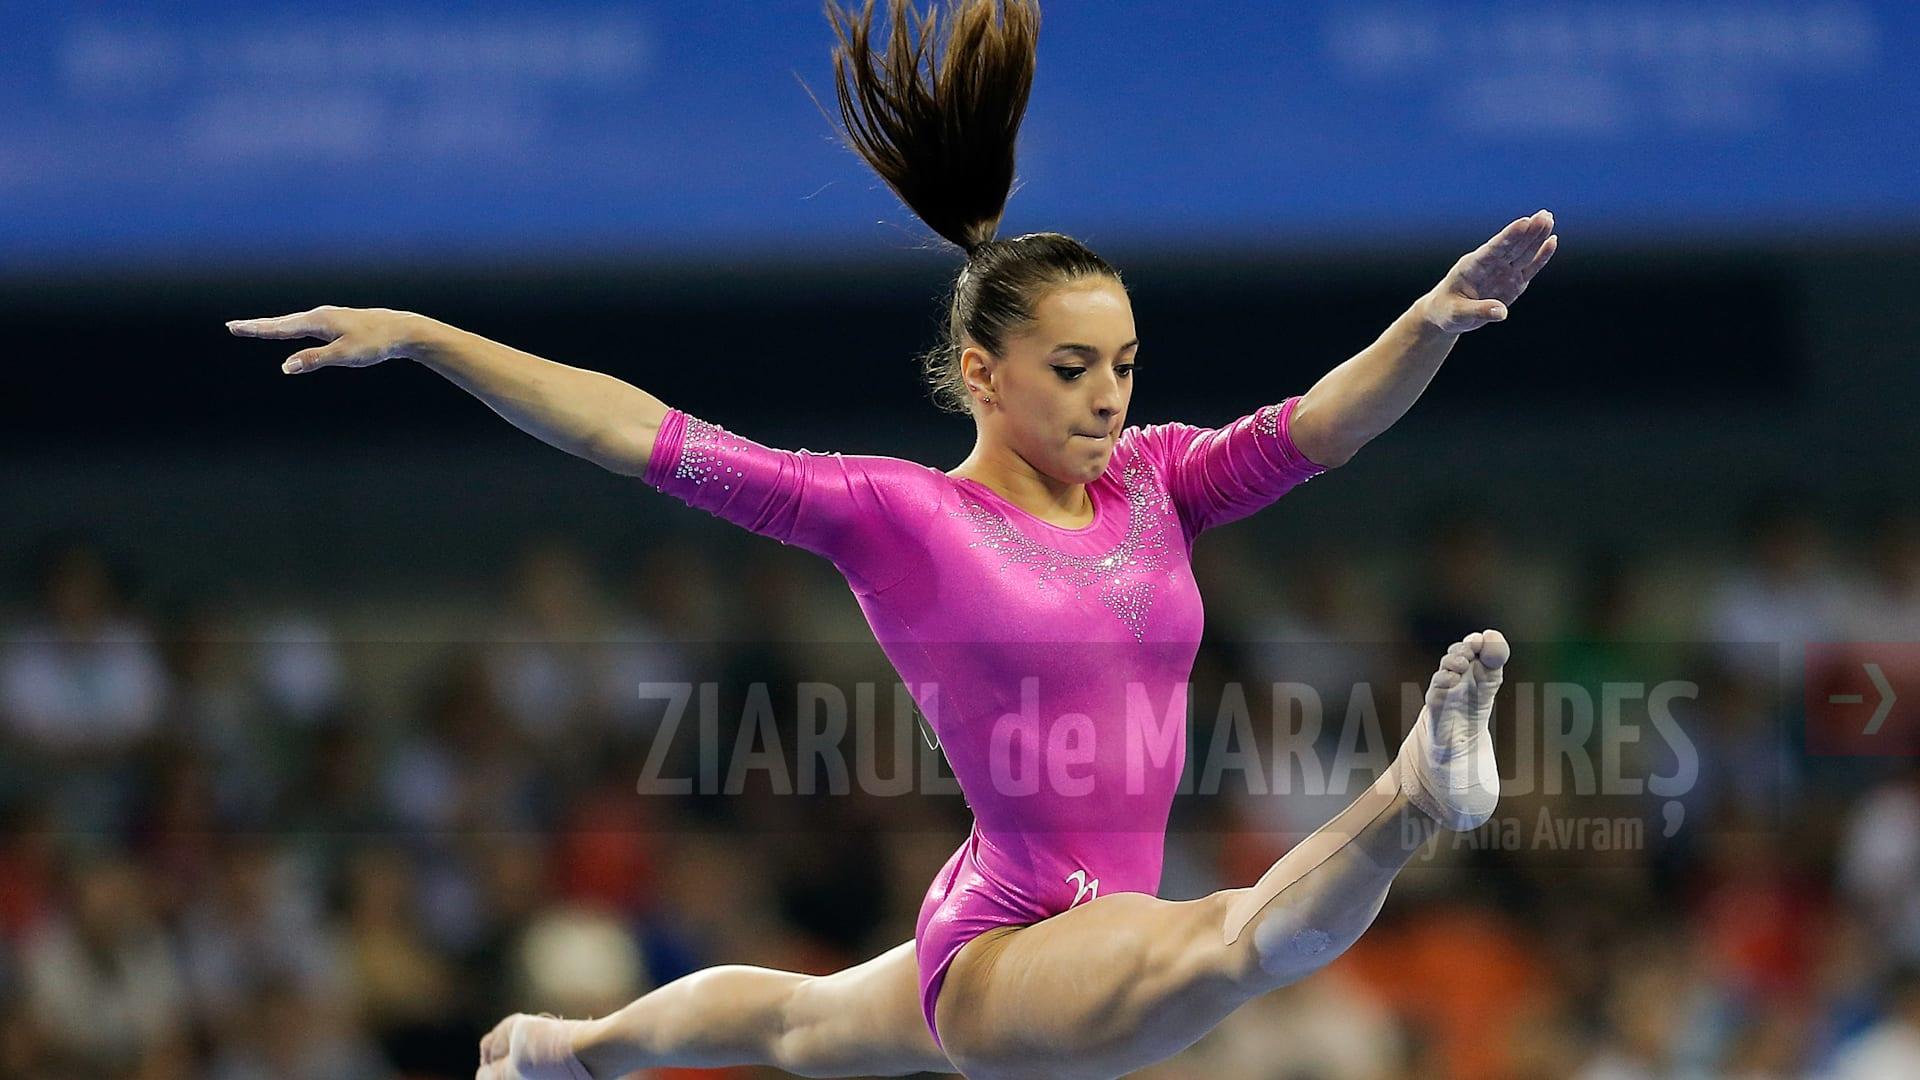 Gimnastică: Larisa Iordache, locul 4 la Europene. Sportiva s-a calificat astfel la Jocurile Olimpice de la Tokyo